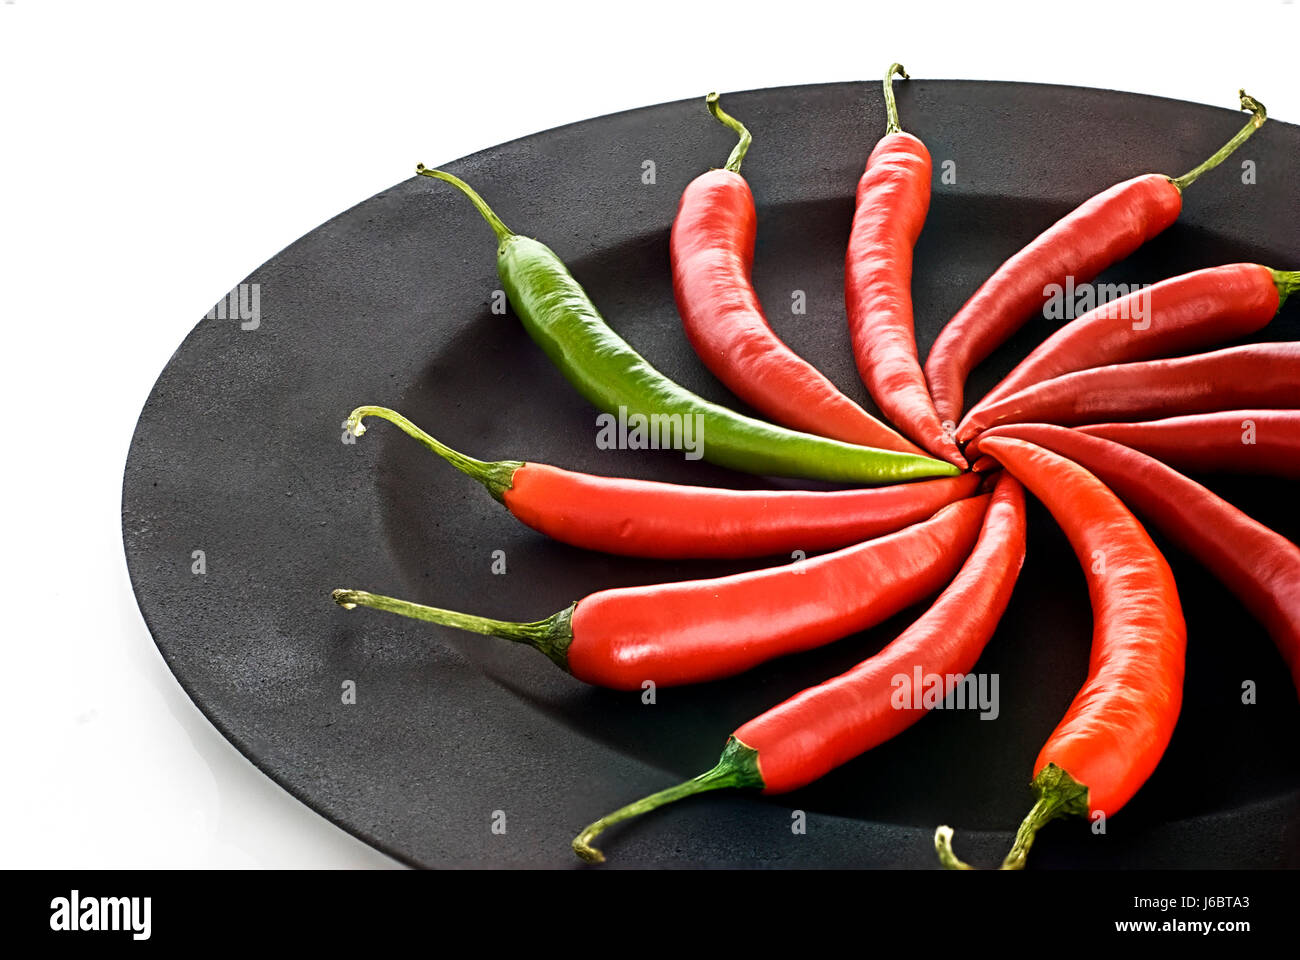 Cibo aliment spice foglio vegetale funi chili chili alimento rosso aliment spice Foto Stock